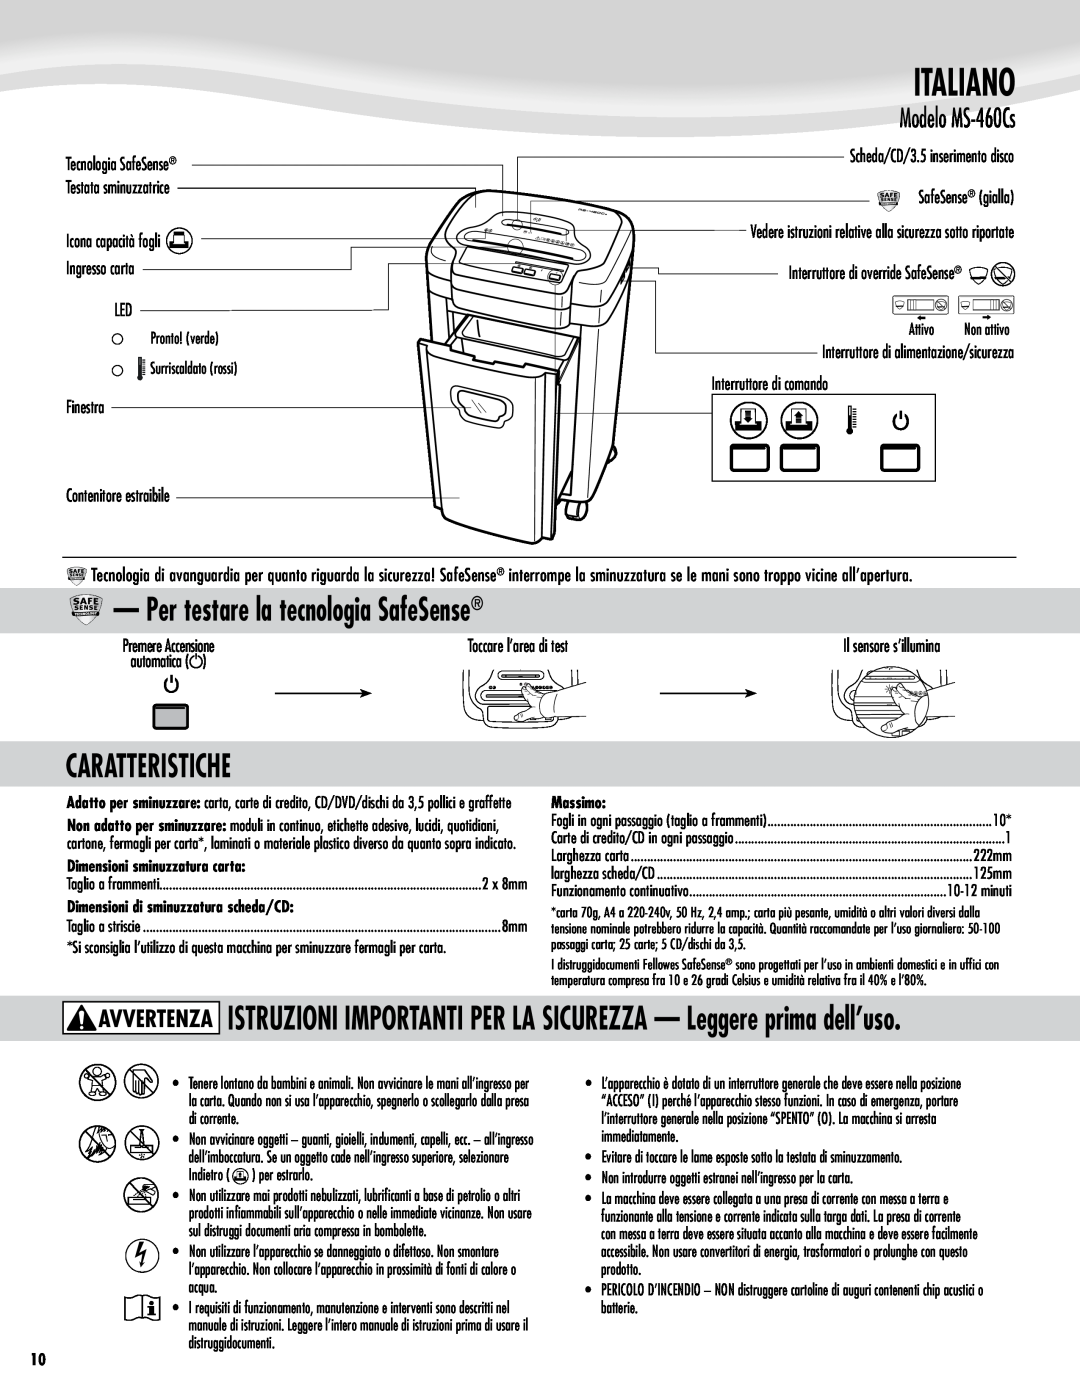 Fellowes Model MS-460Cs manual Italiano, Per testare la tecnologia SafeSense, Caratteristiche, Modelo MS-460Cs, Massimo 